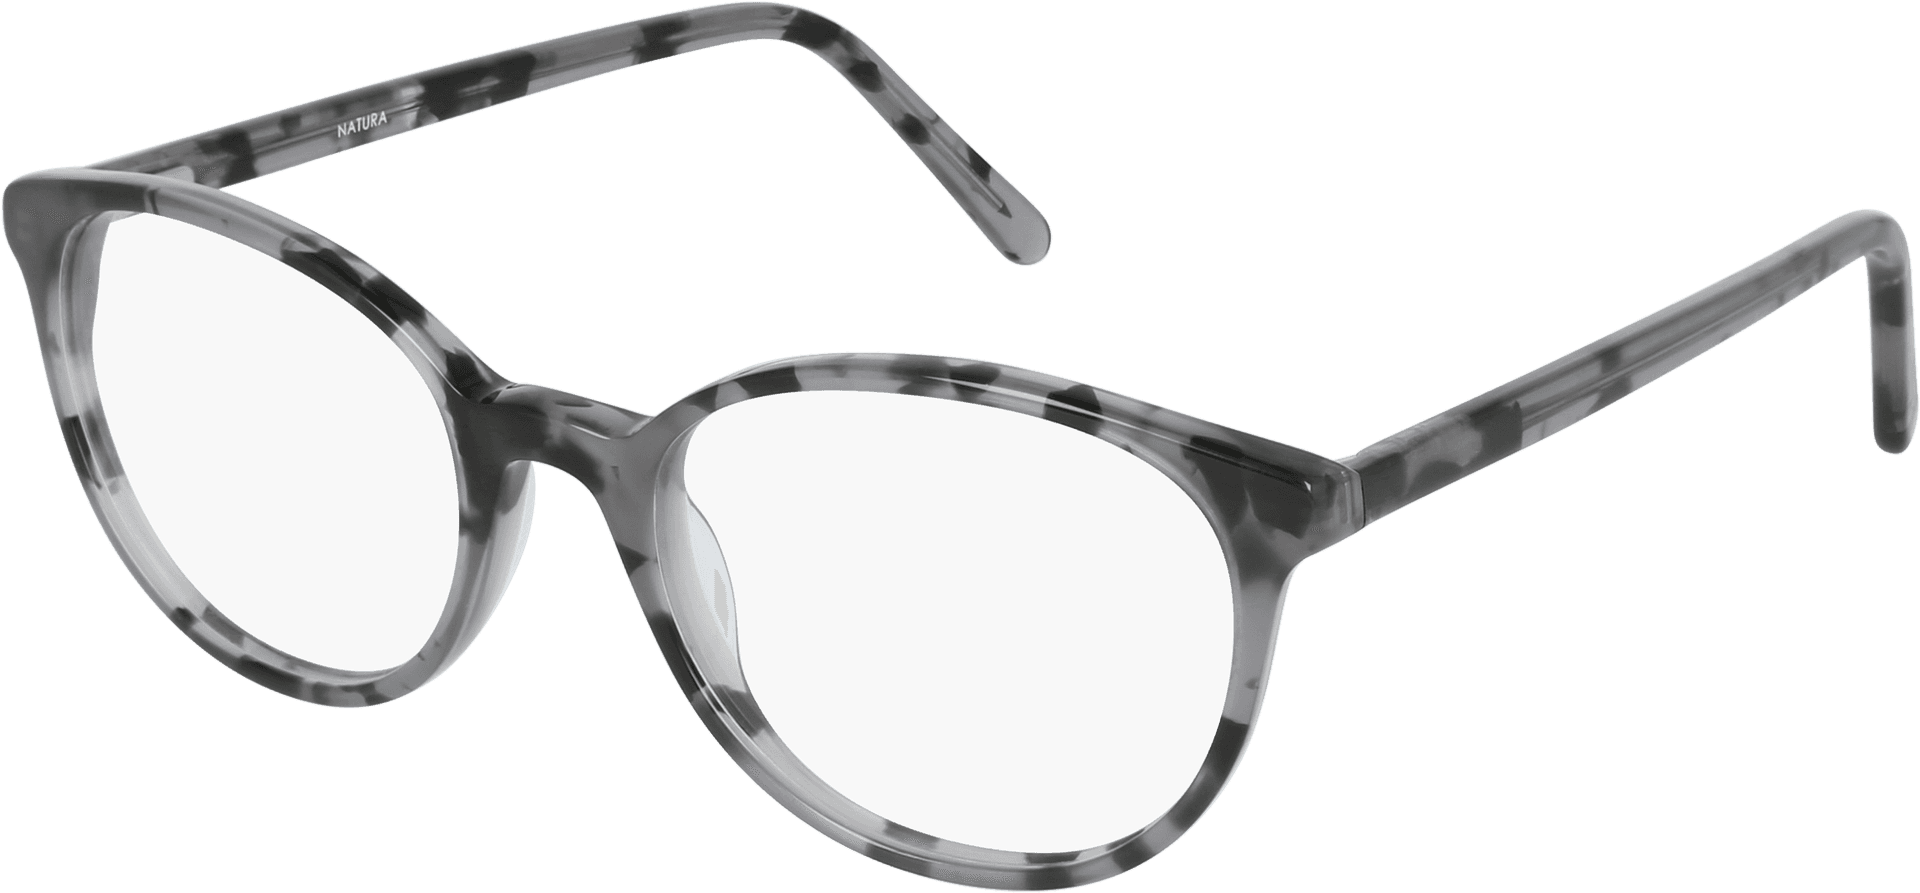 Designer Tortoiseshell Sunglasses PNG